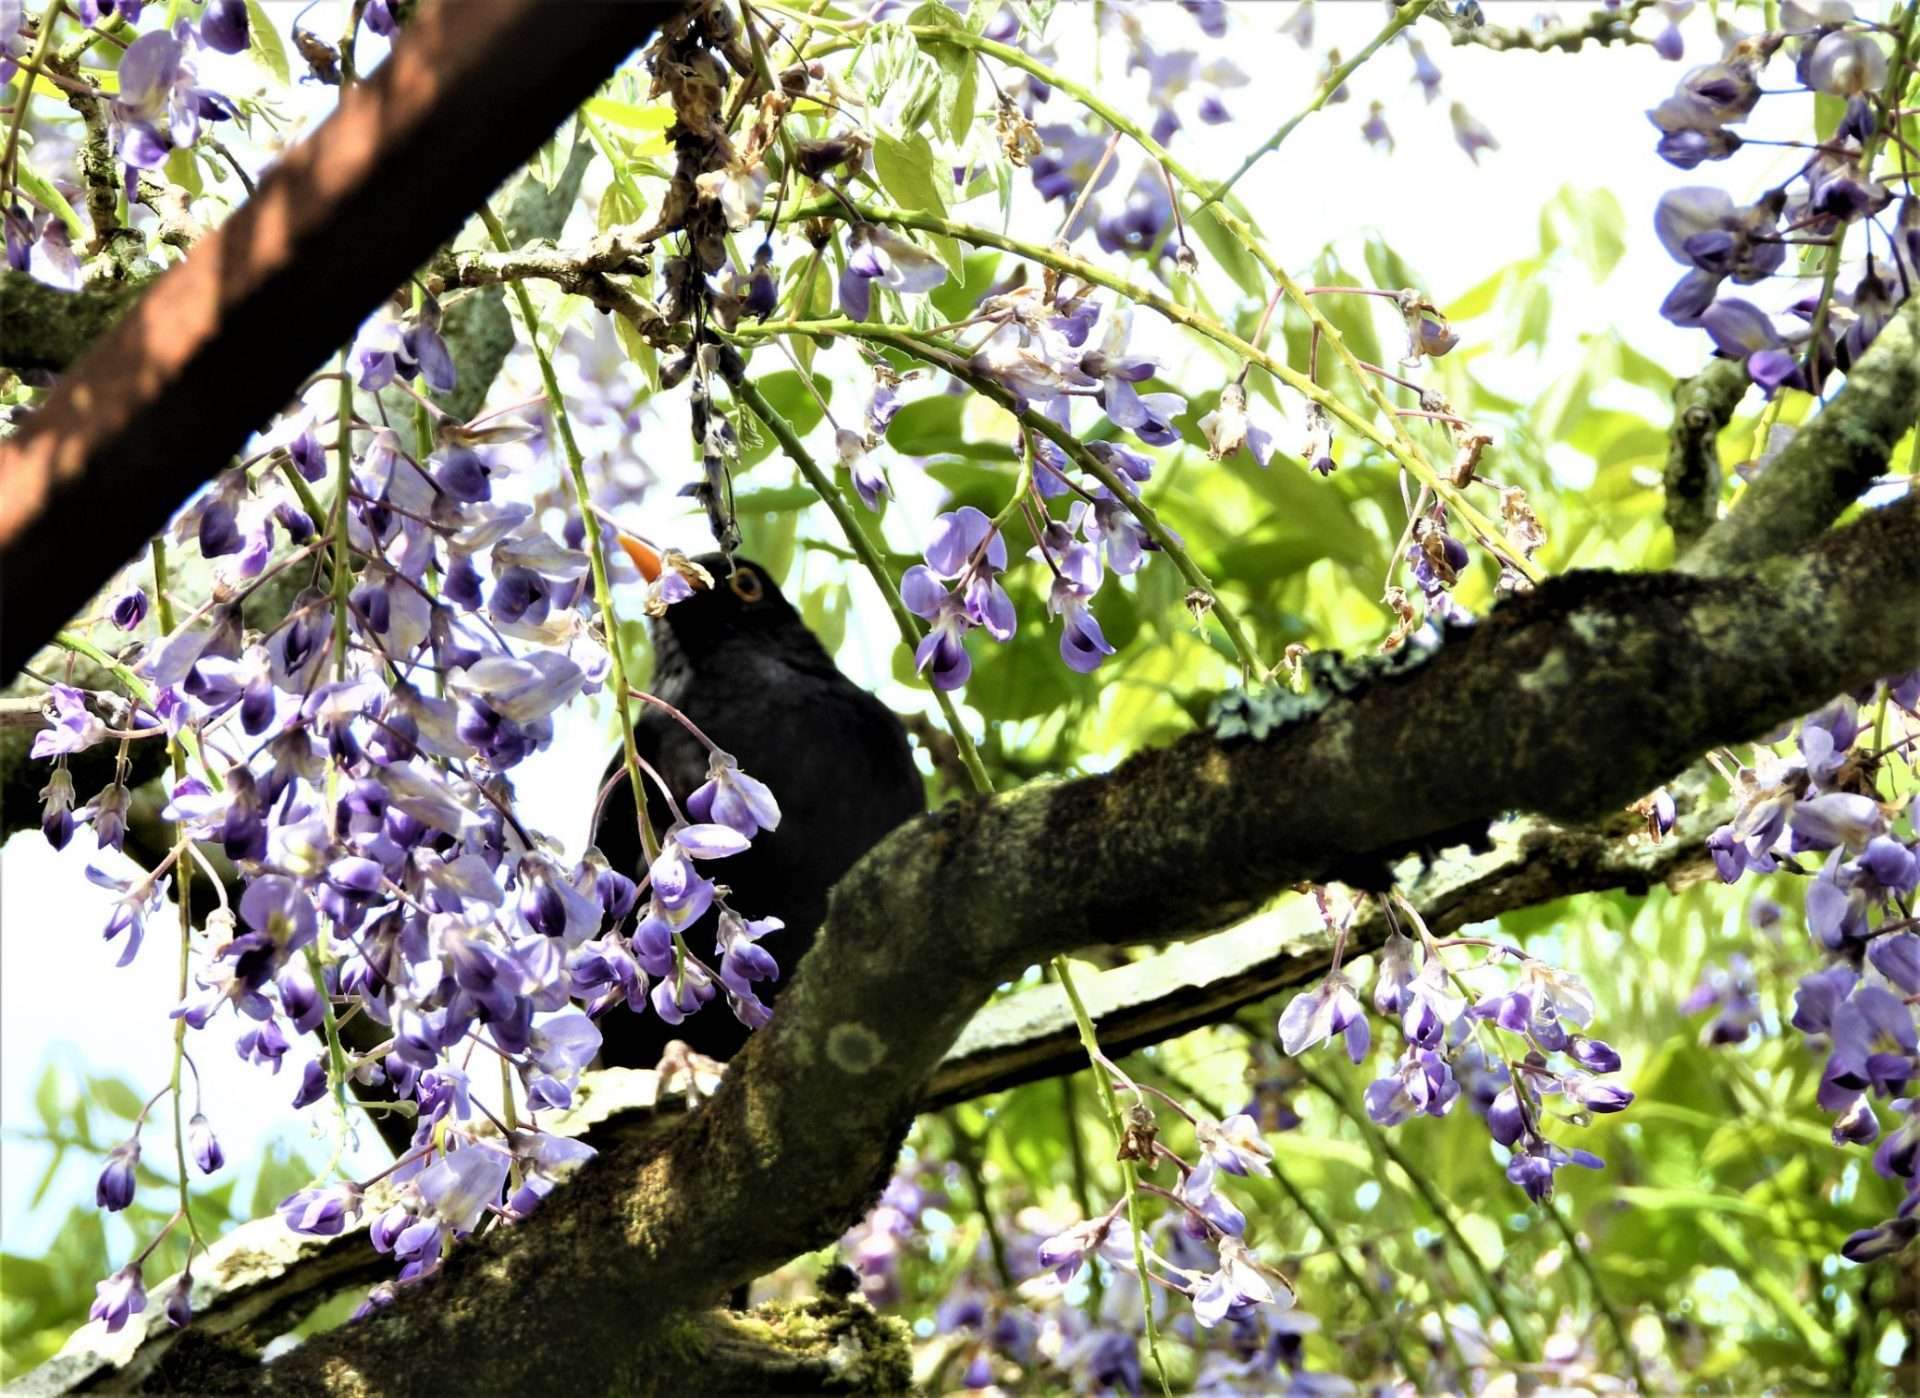 Blackbird by Kenneth Bradley at Marwood hill garden